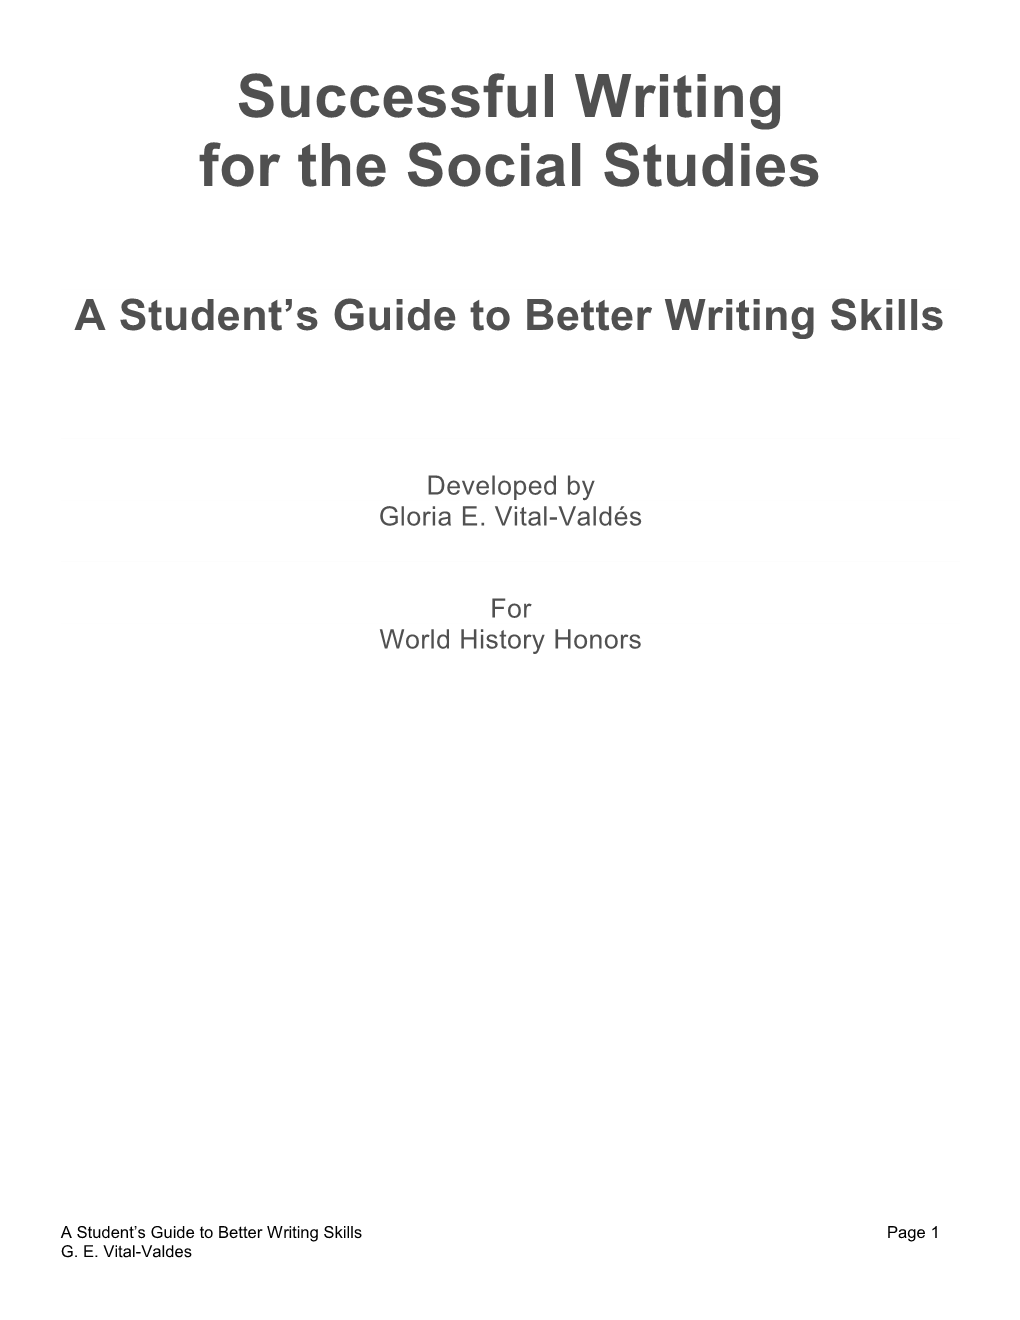 For the Social Studies